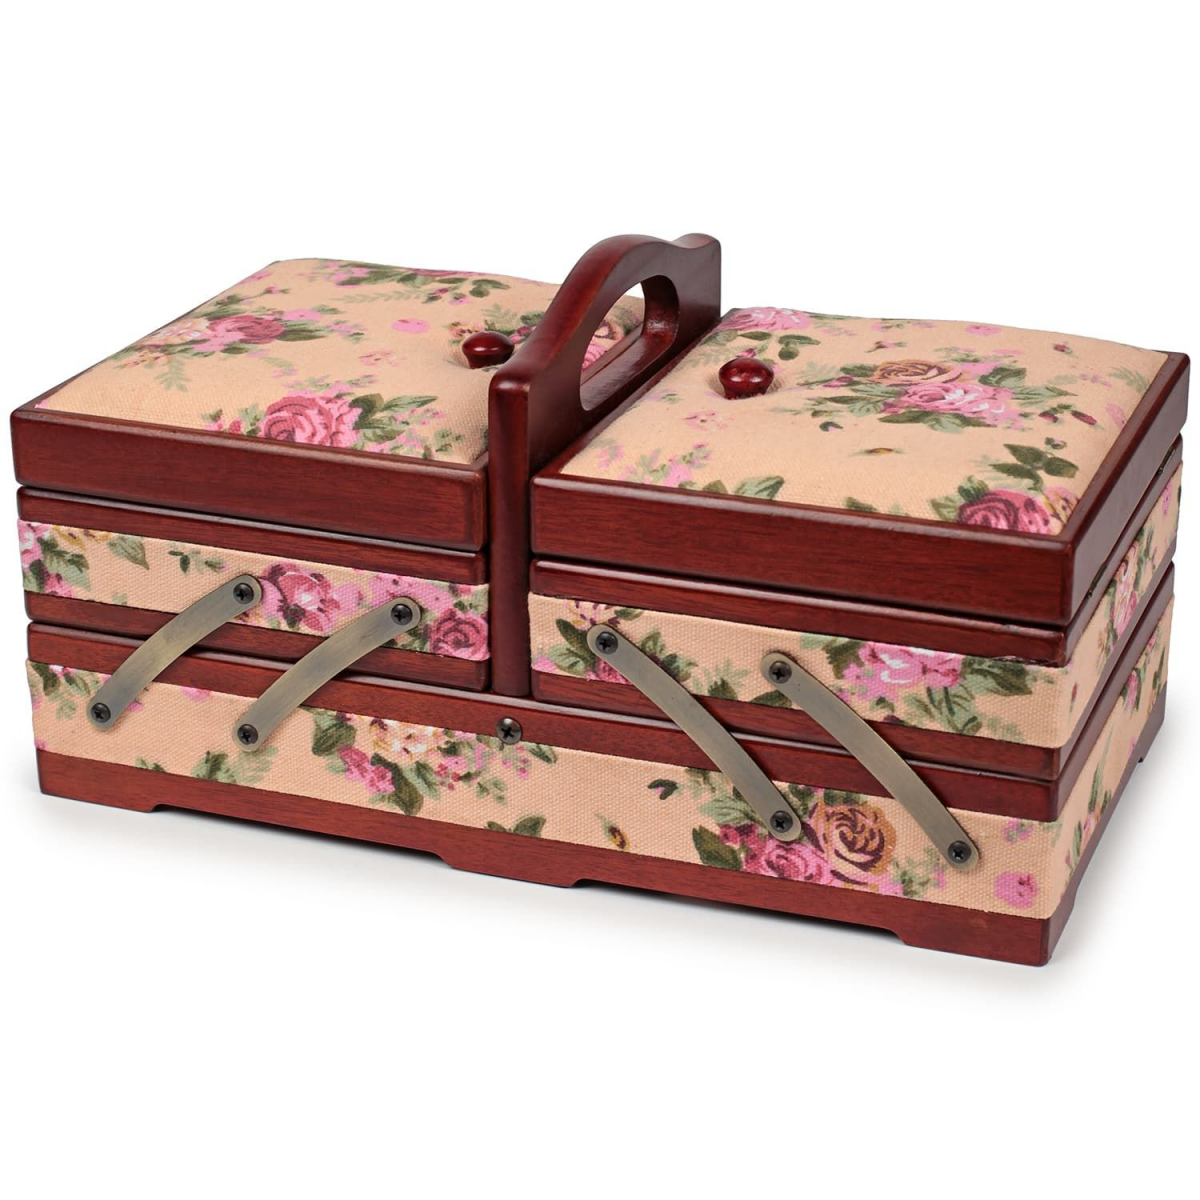 Жестяная коробочка для хранения швейных принадлежностей